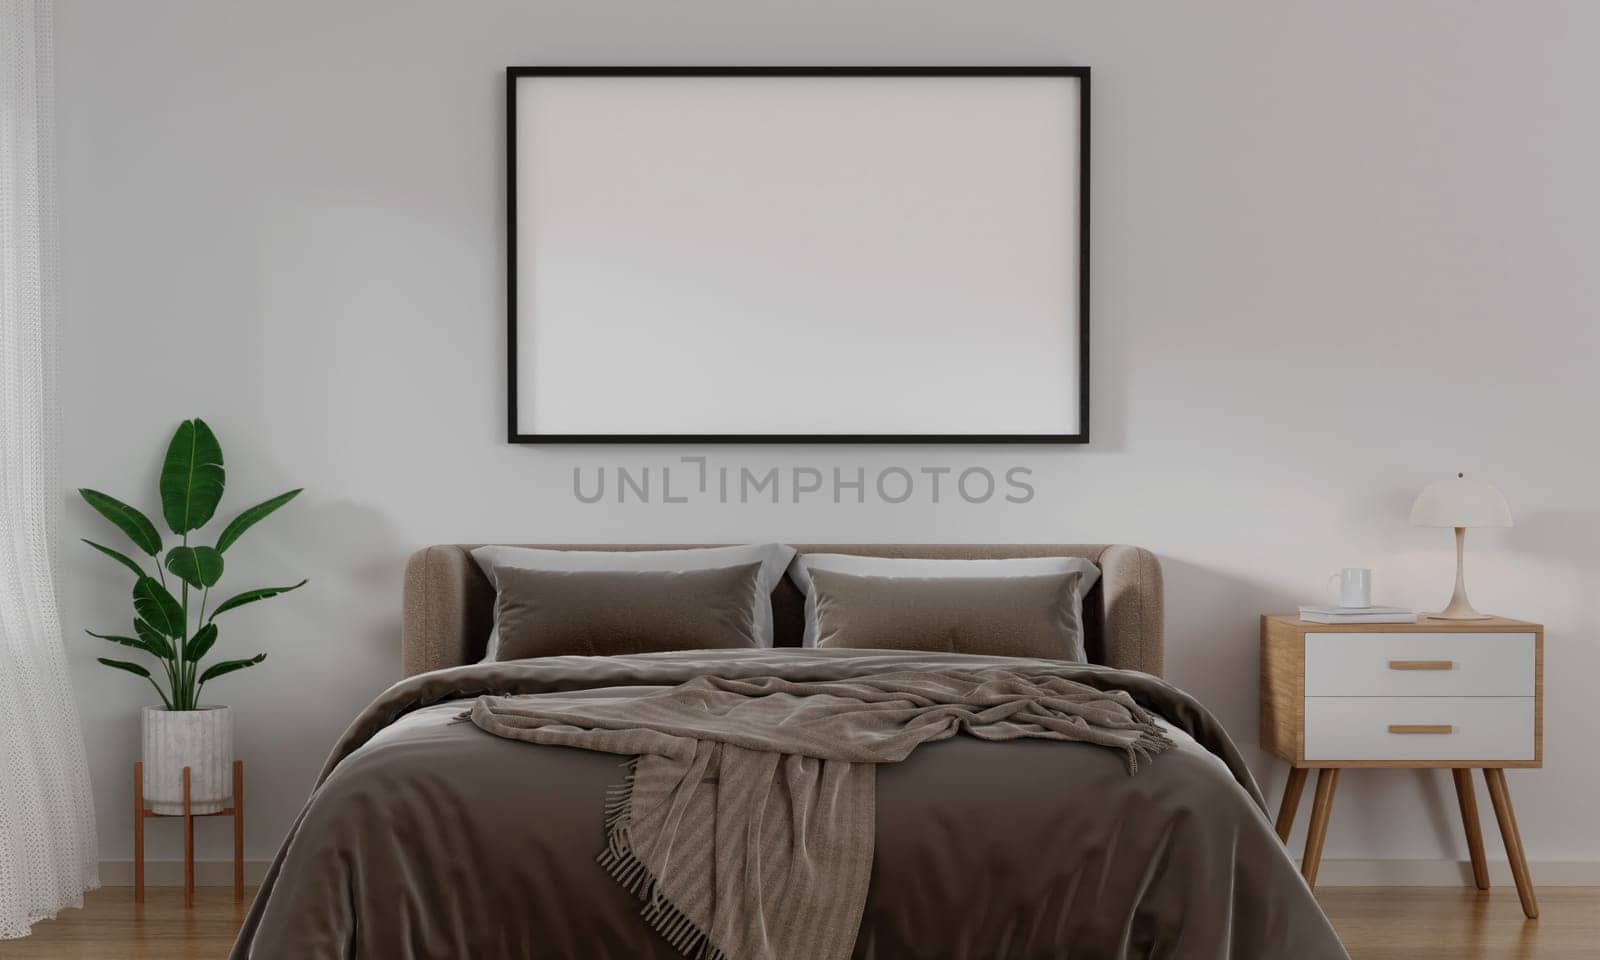 Frame horizontal frame mockup in cozy bedroom interior. 3d render illustration.